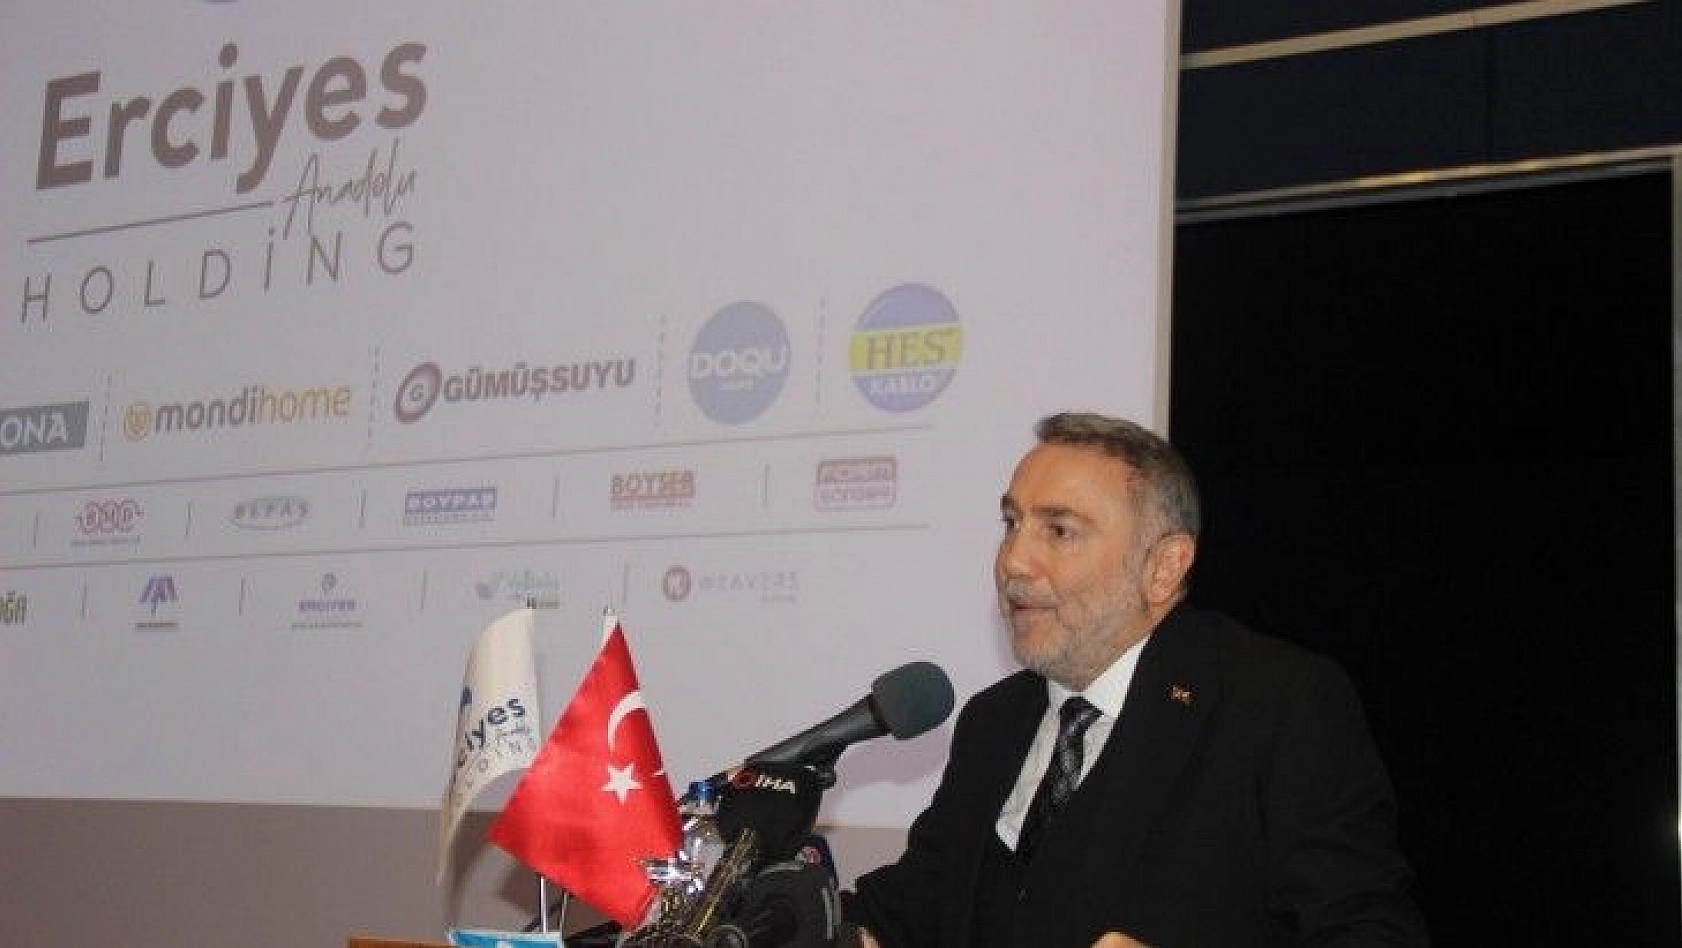 Erciyes Anadolu Holding'in Kayseri'den tedariği yaklaşık 1 milyar TL